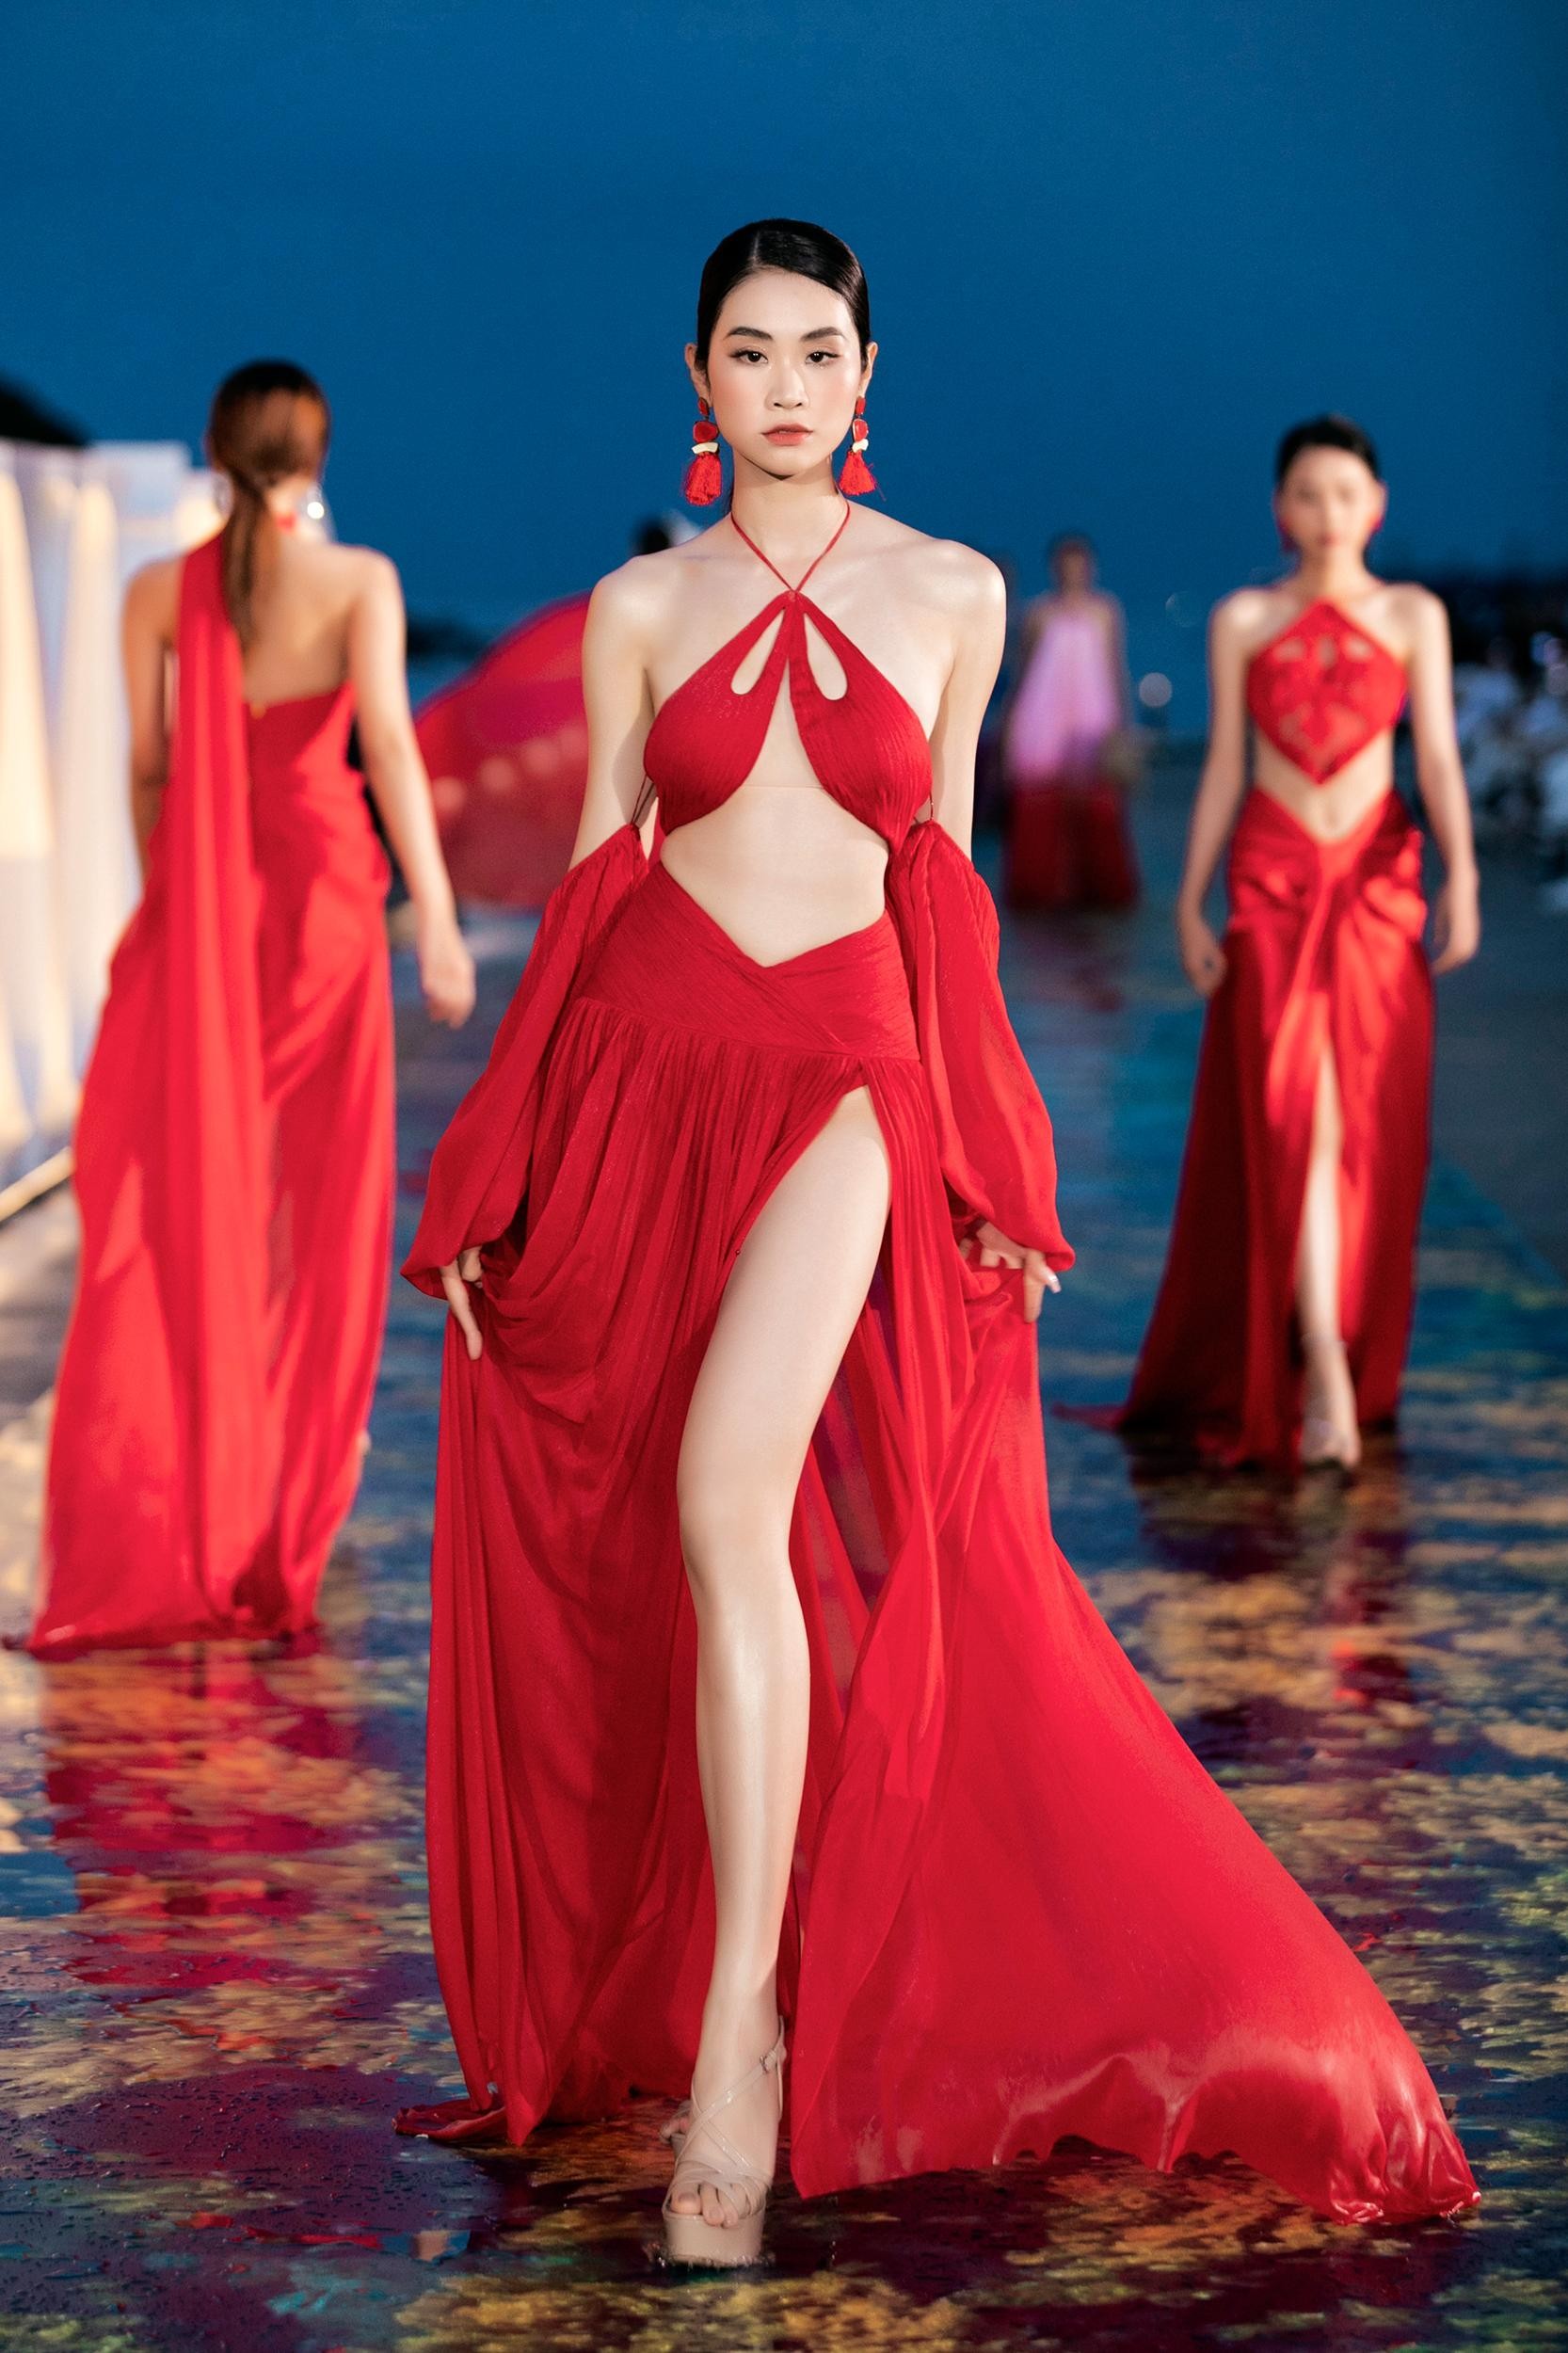 Hoa hậu Thuỳ Tiên hoá nữ thần biển cả nóng bỏng, sánh vai Lương Thuỳ Linh làm vedette - Ảnh 19.